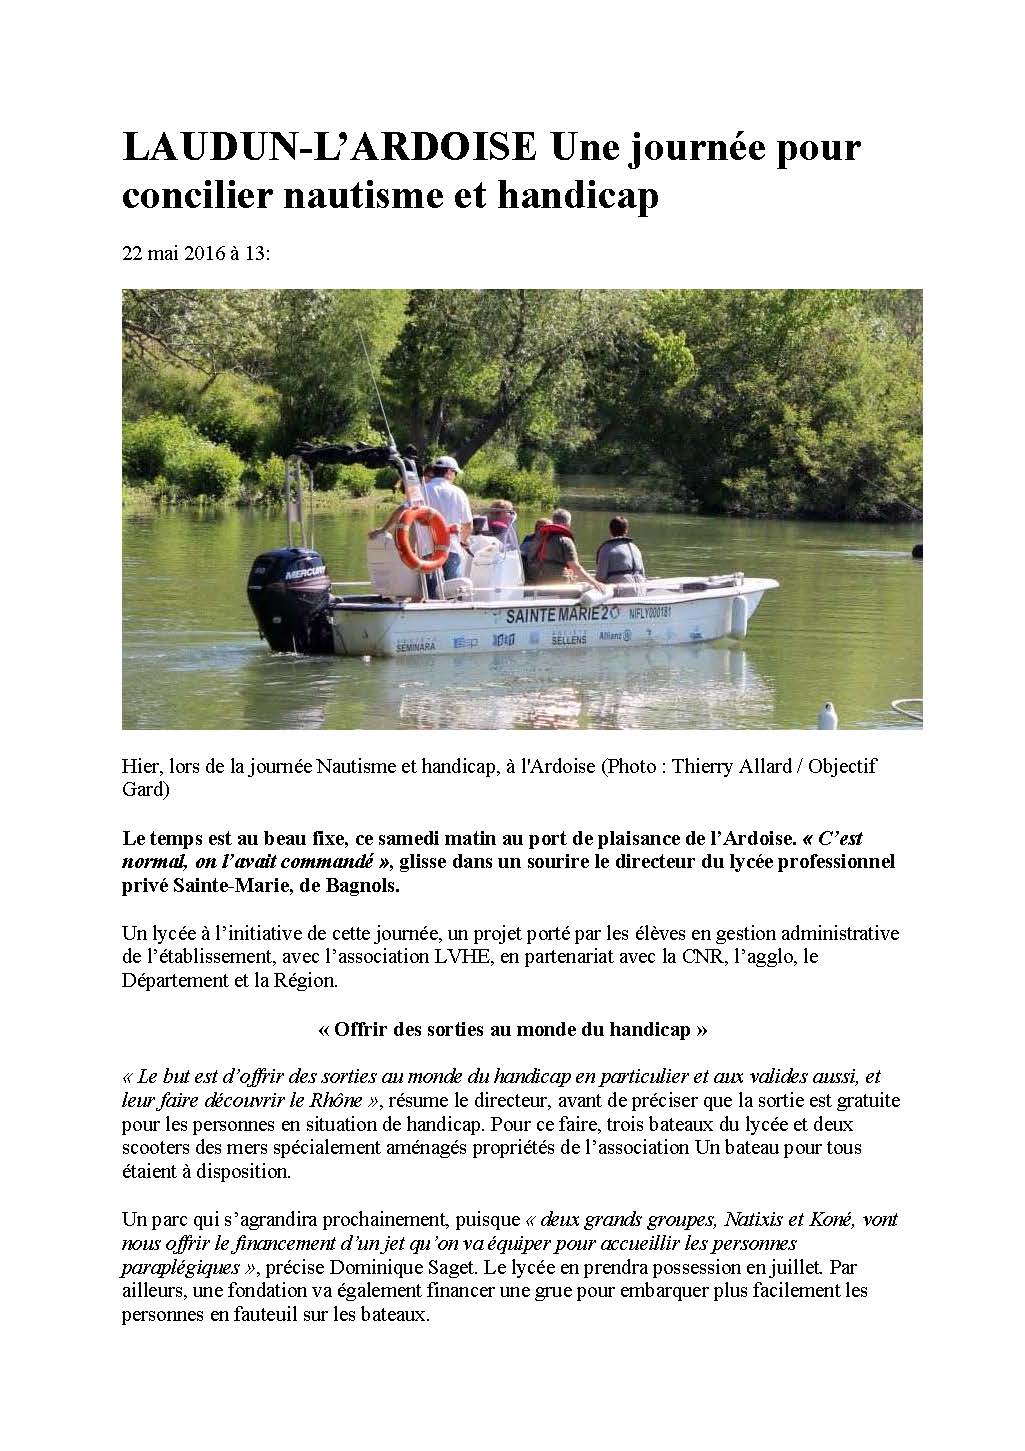 Objectif Gard LAUDUN-L’ARDOISE Une journée pour concilier nautisme et handicap 22-05-2016_Page_1